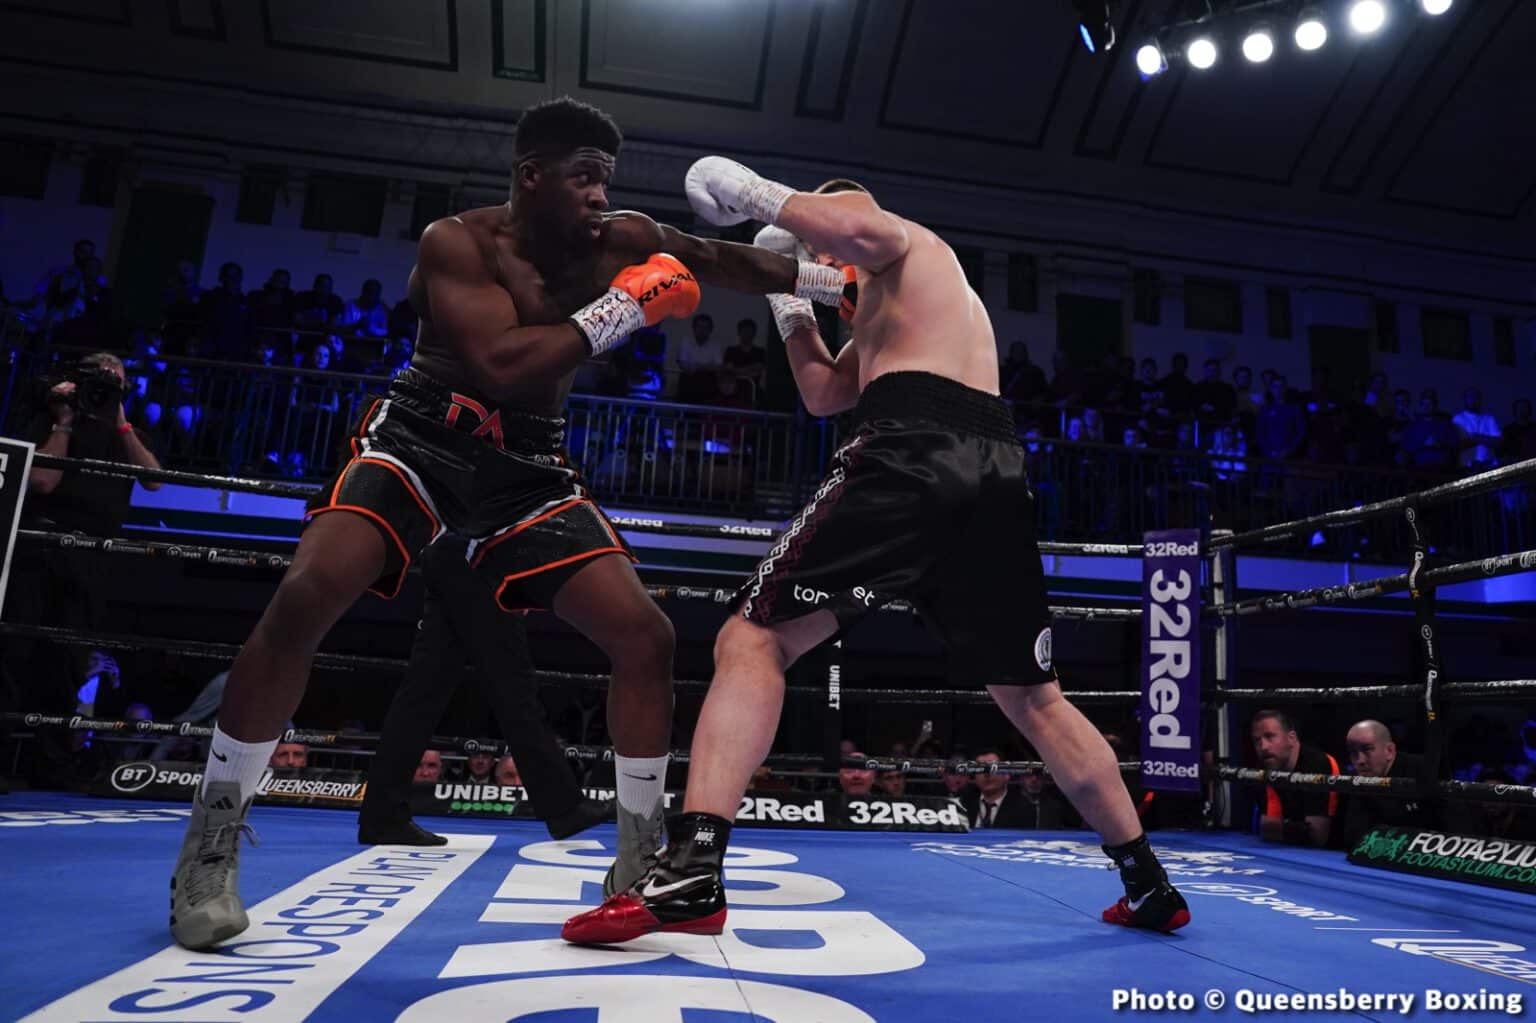 David Adeleye Stops Bezus at York Hall - Boxing Results